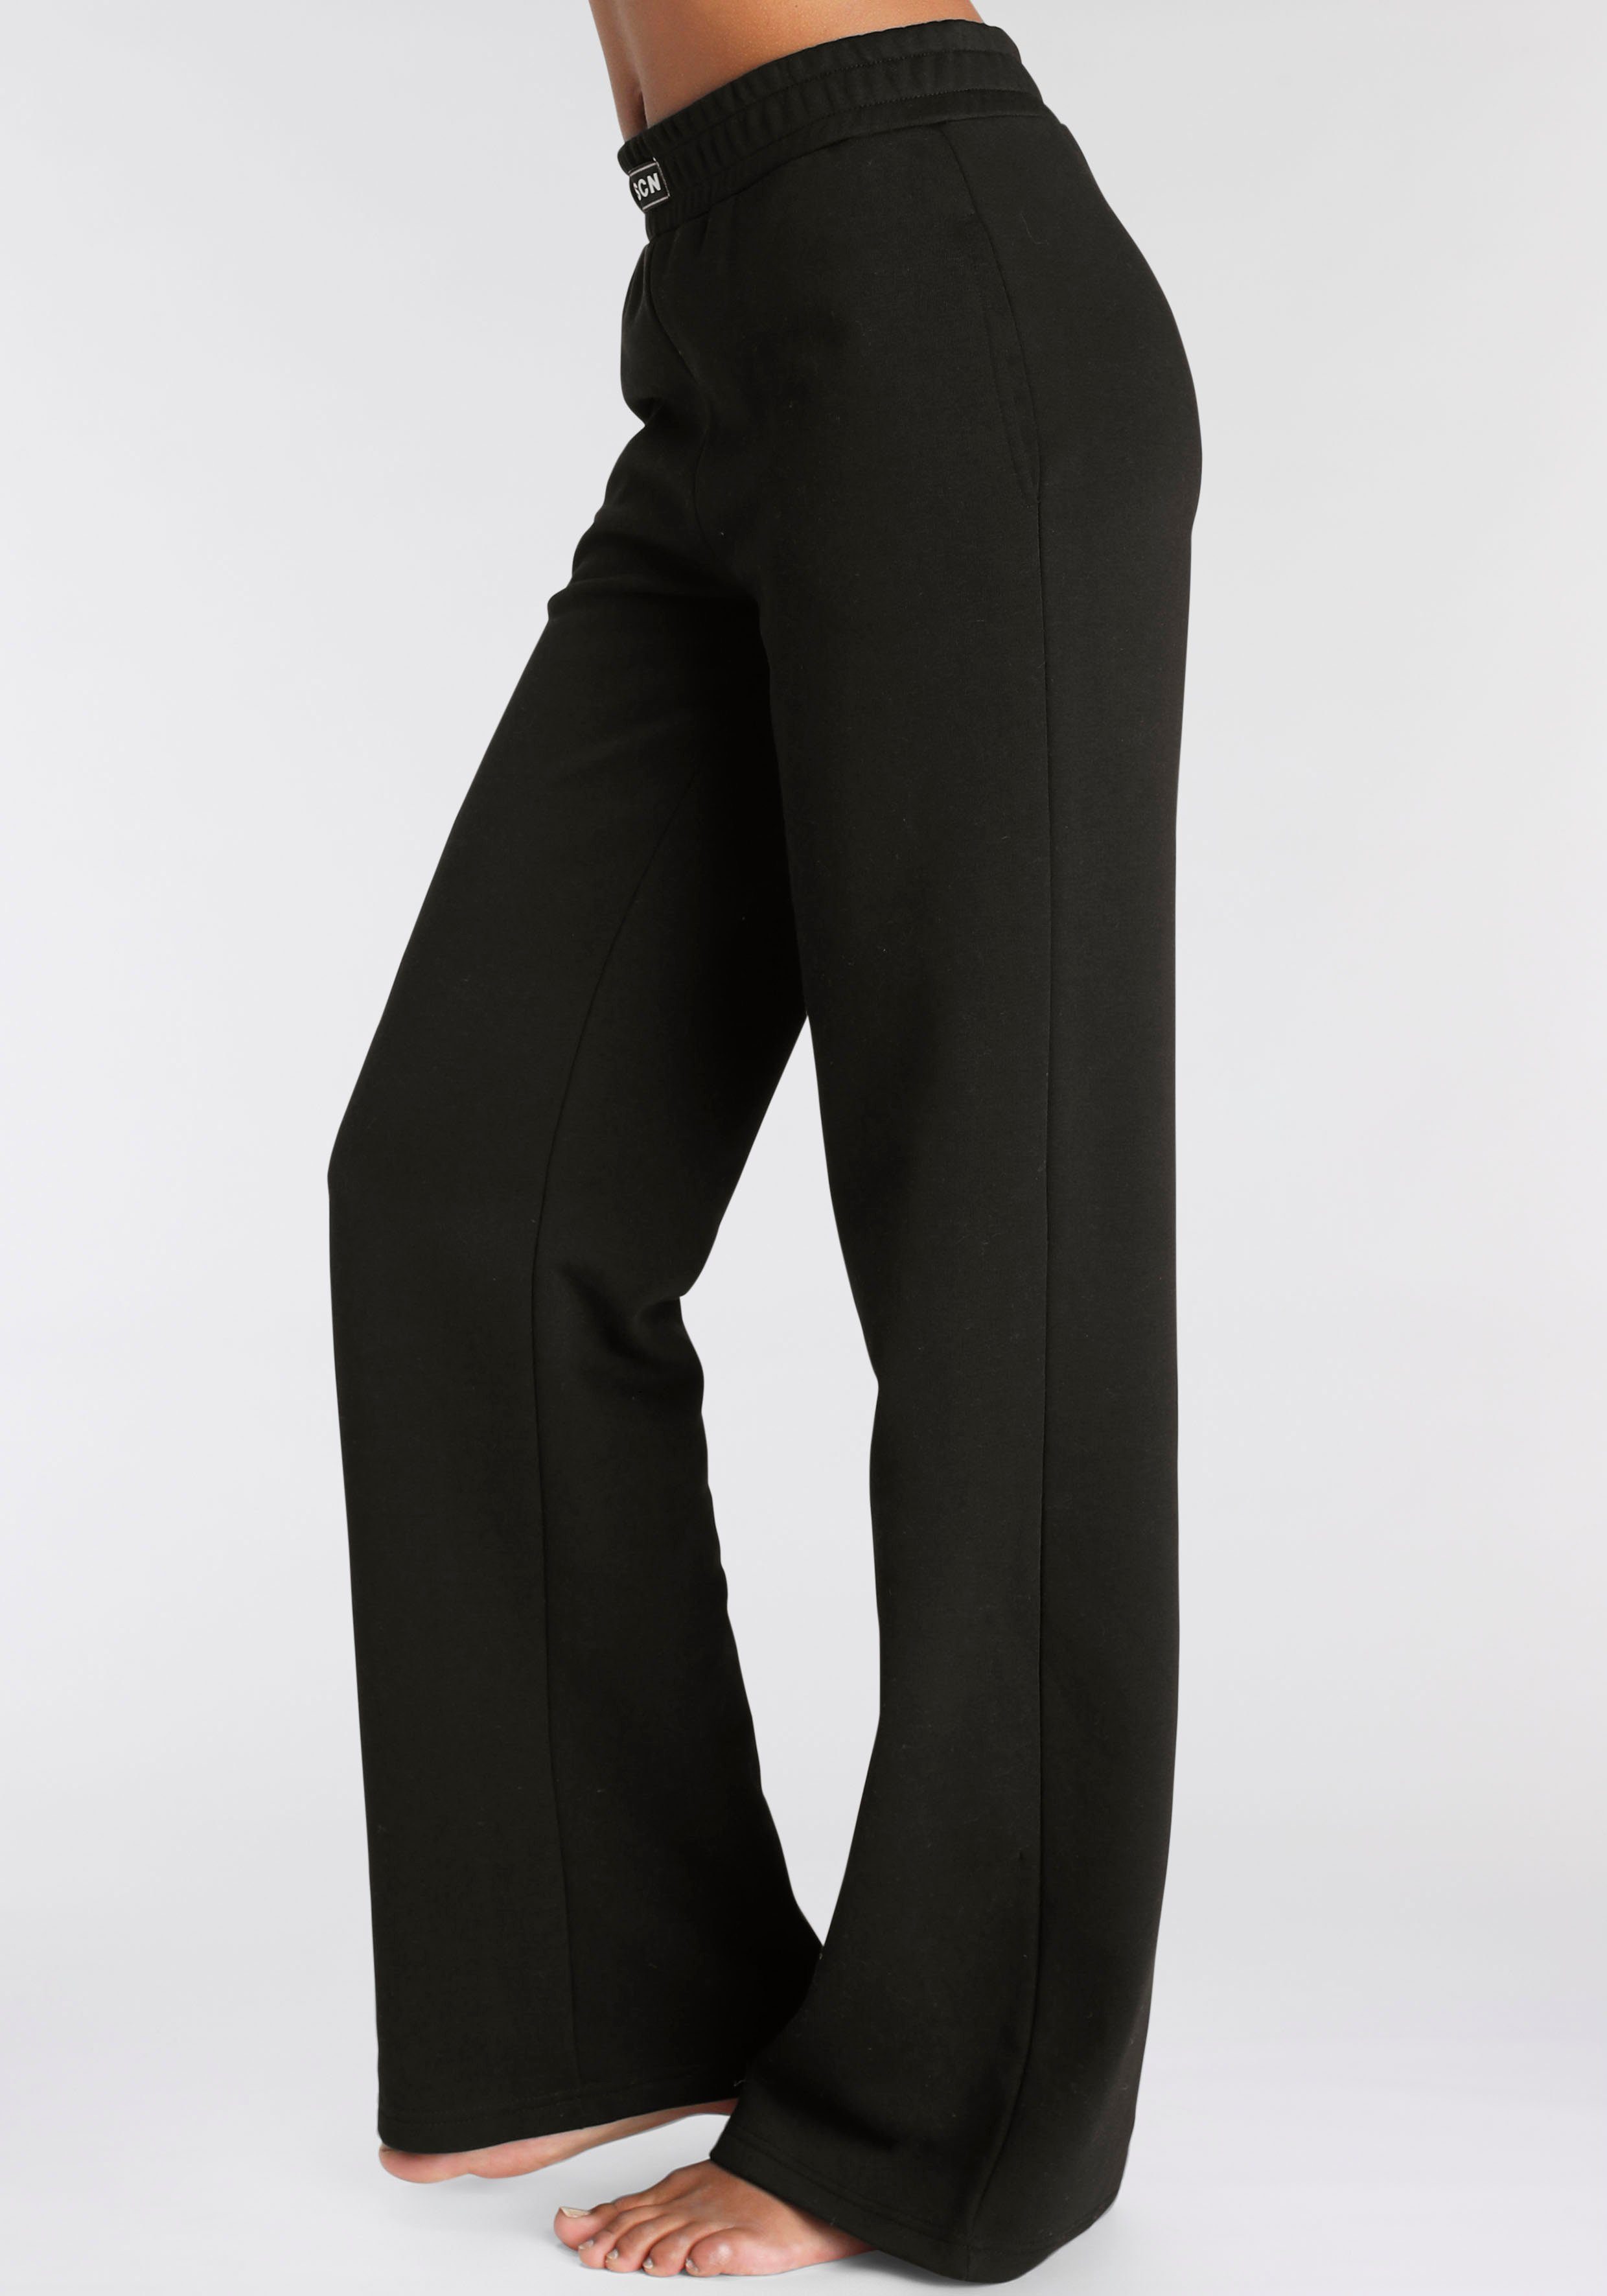 LASCANA Sweathose mit seitlichen Taschen, Loungewear, schwarz Loungeanzug